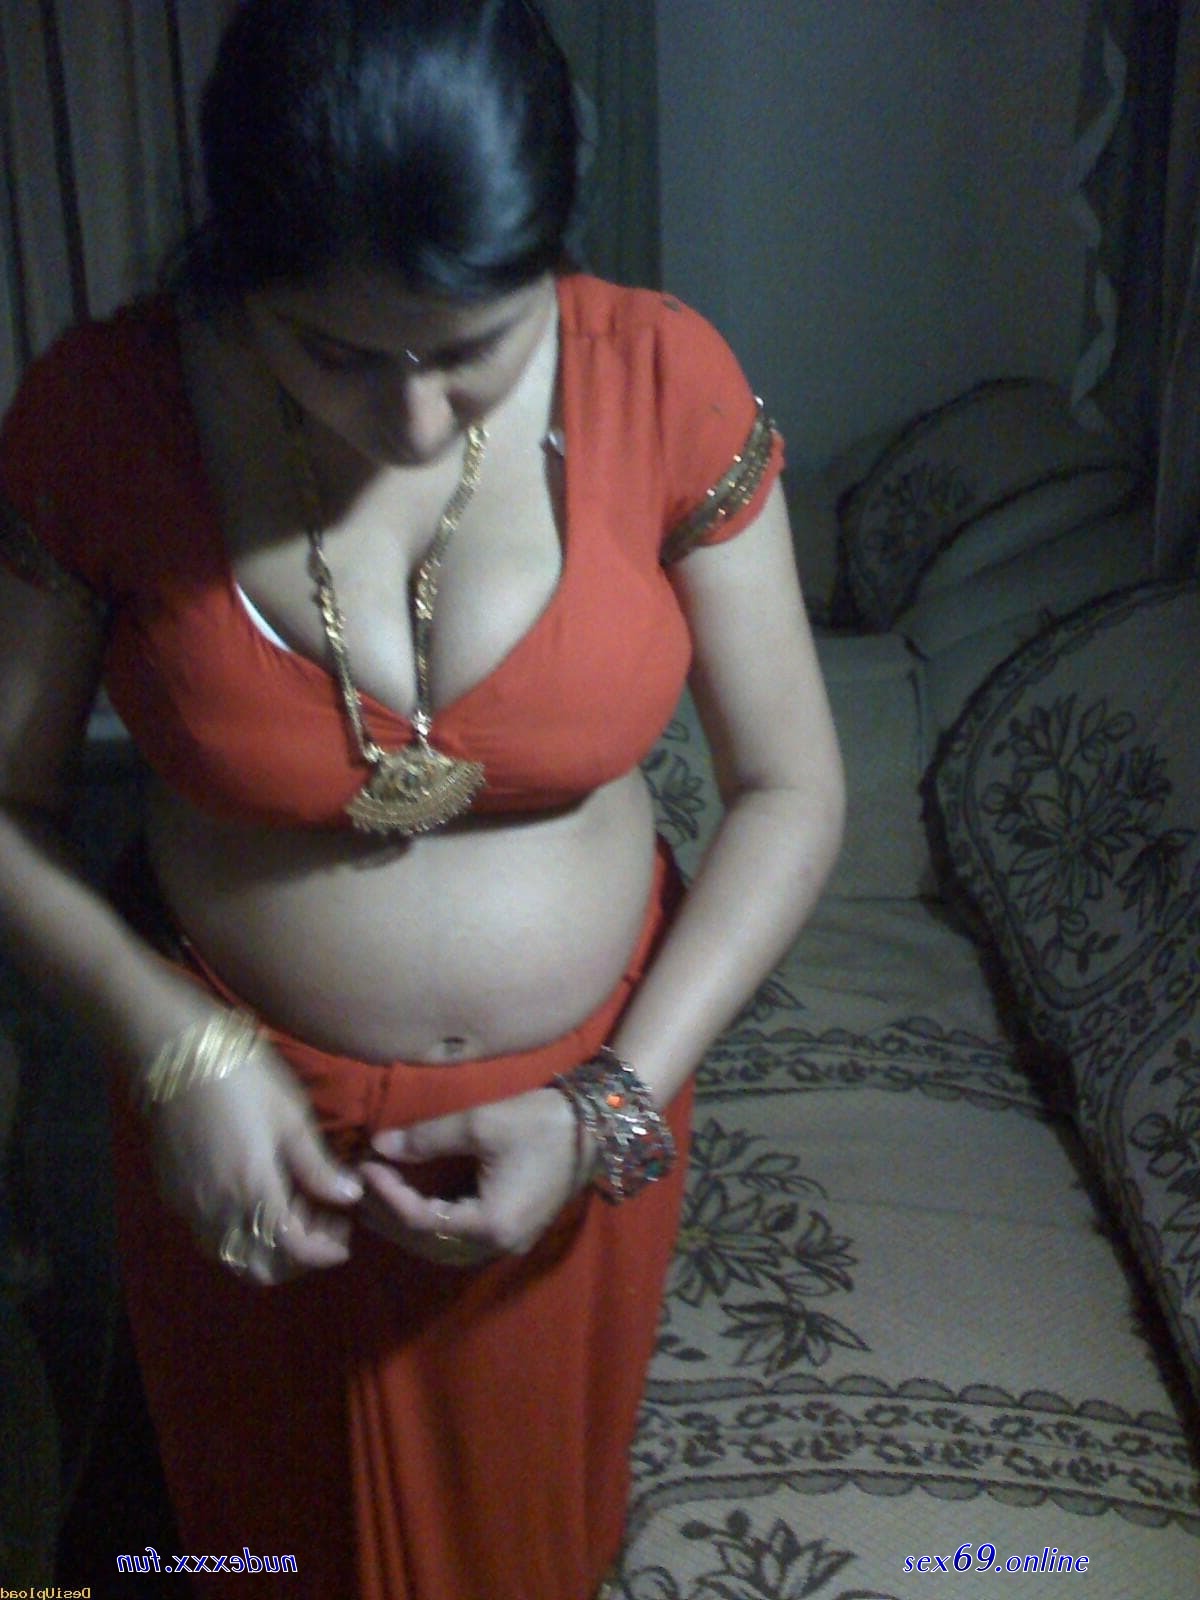 Indian Saree Nude - housewives saree sex images - Sexy photos